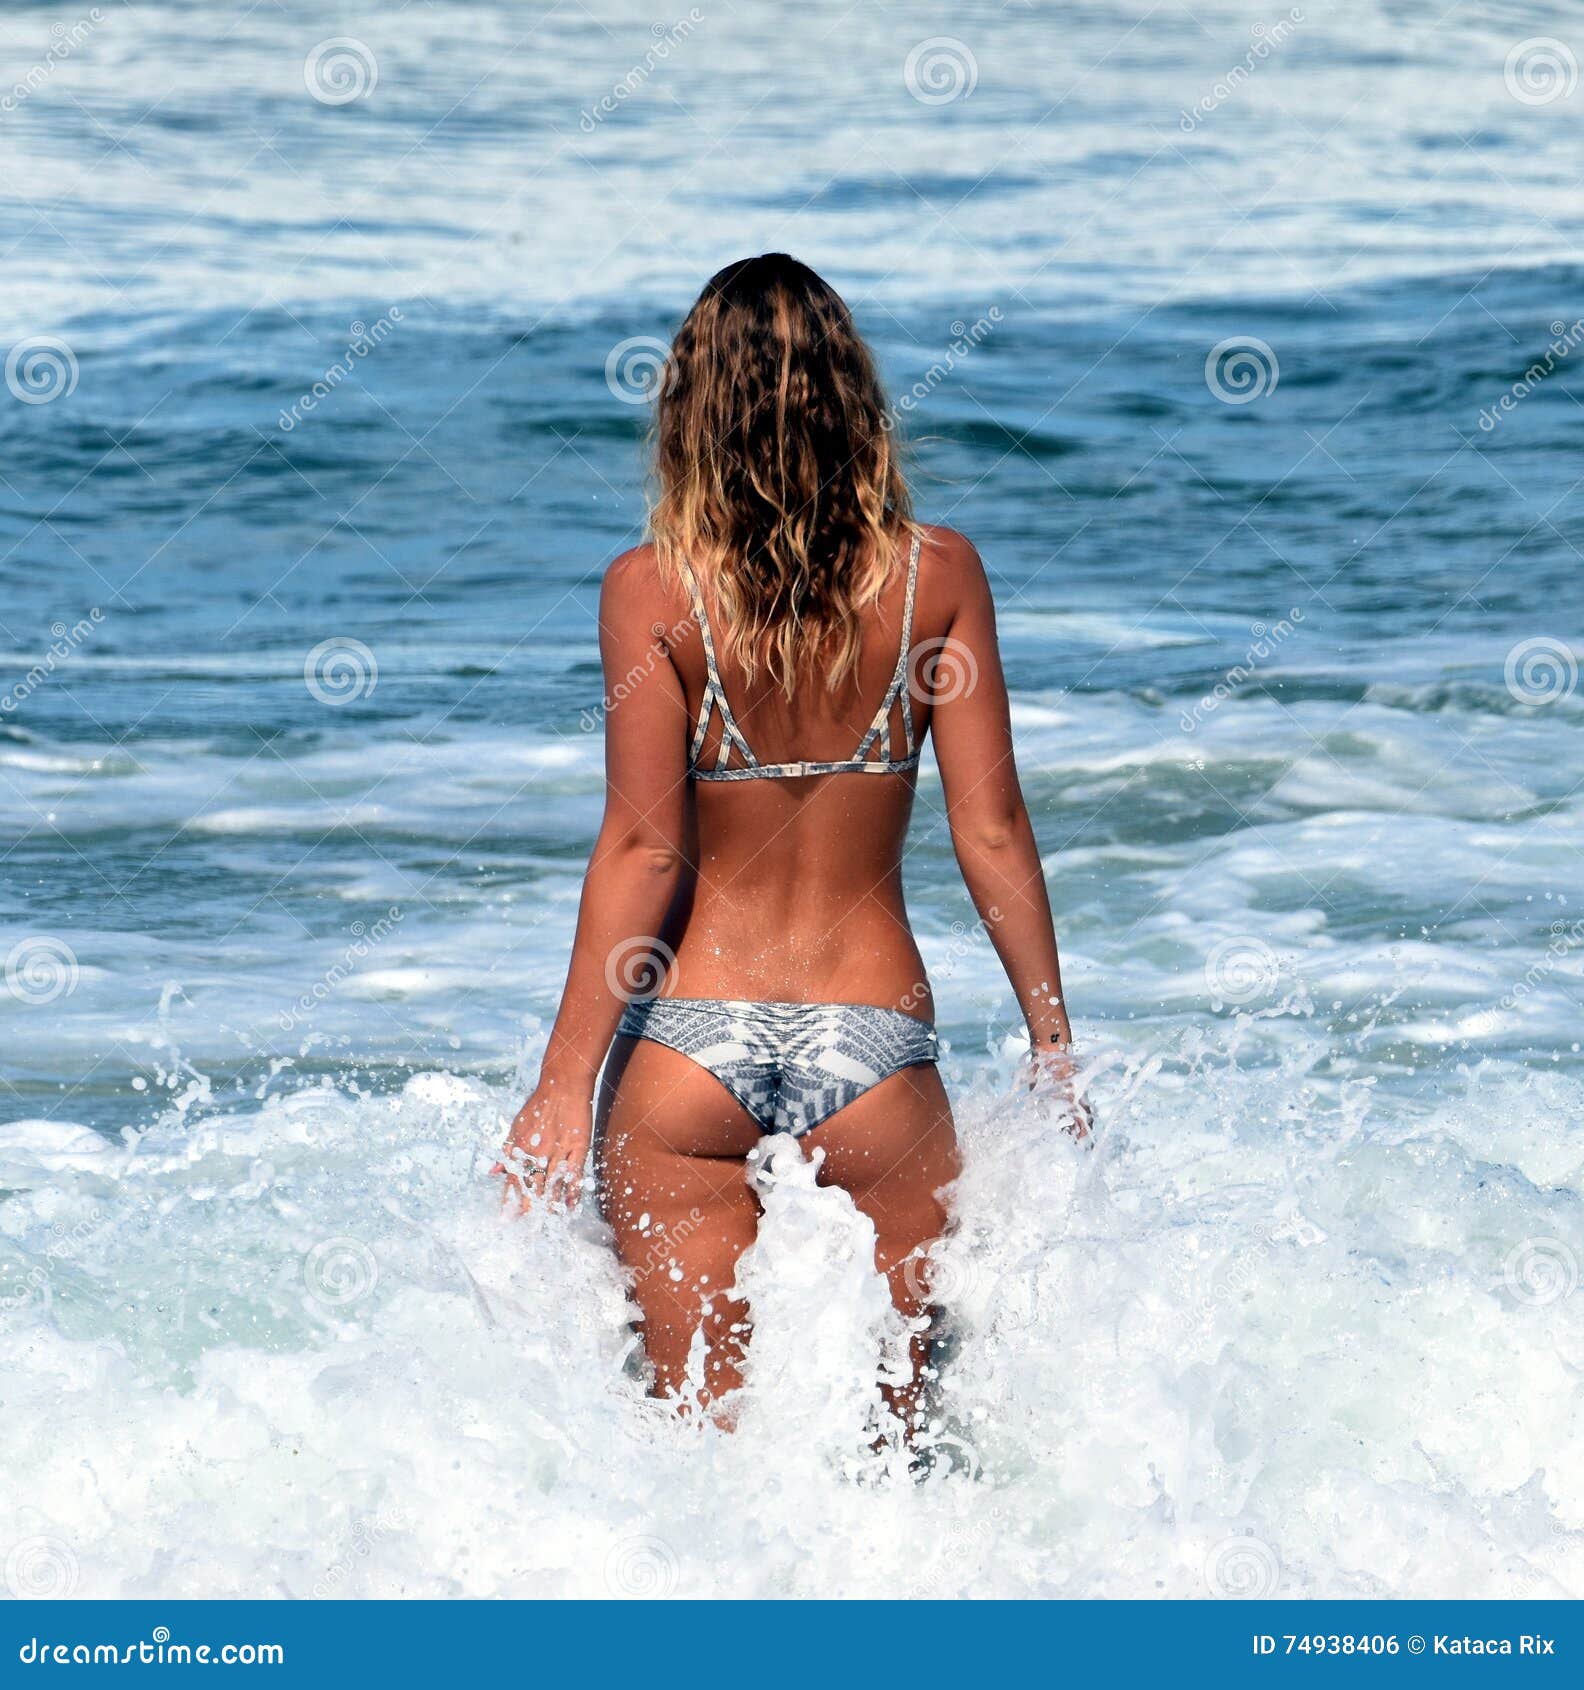 amatur wife nude beach